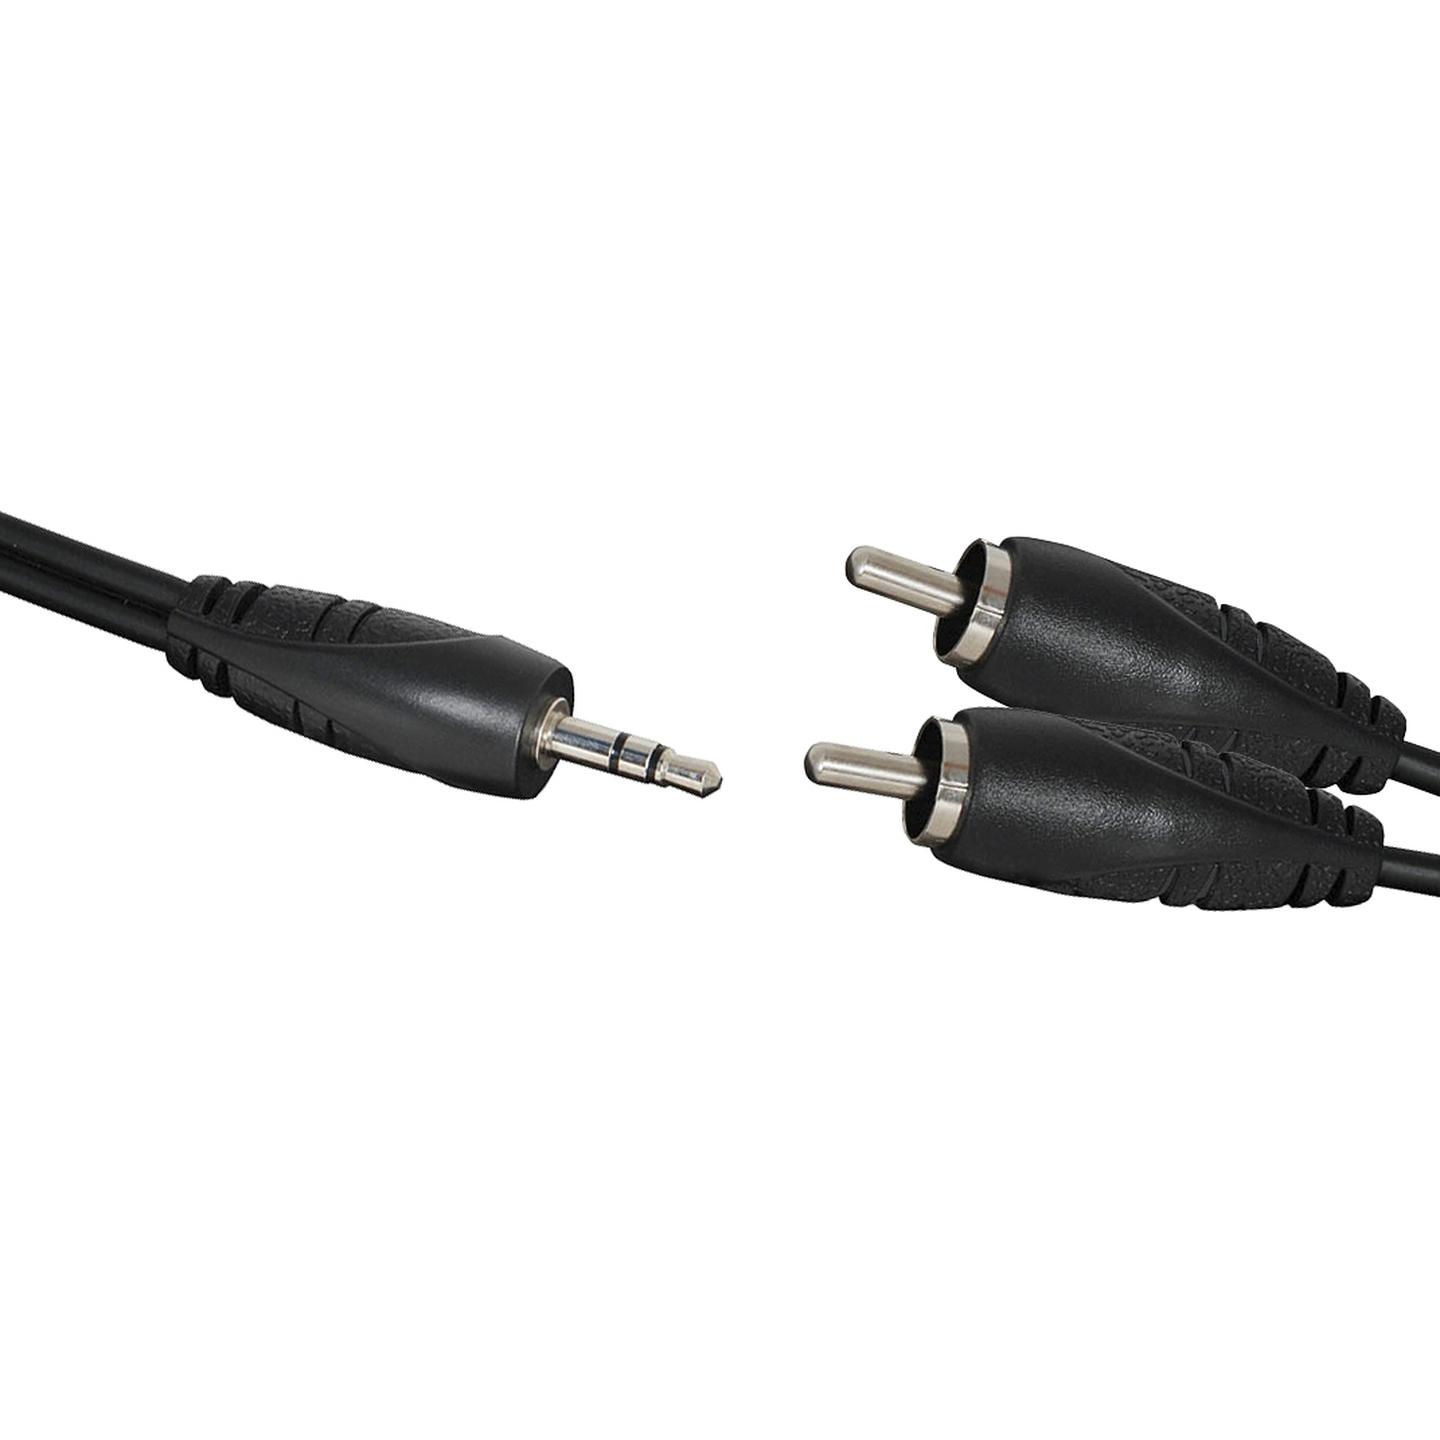 Audio Cable Stereo 3.5mm Plug to 2 x RCA Plug